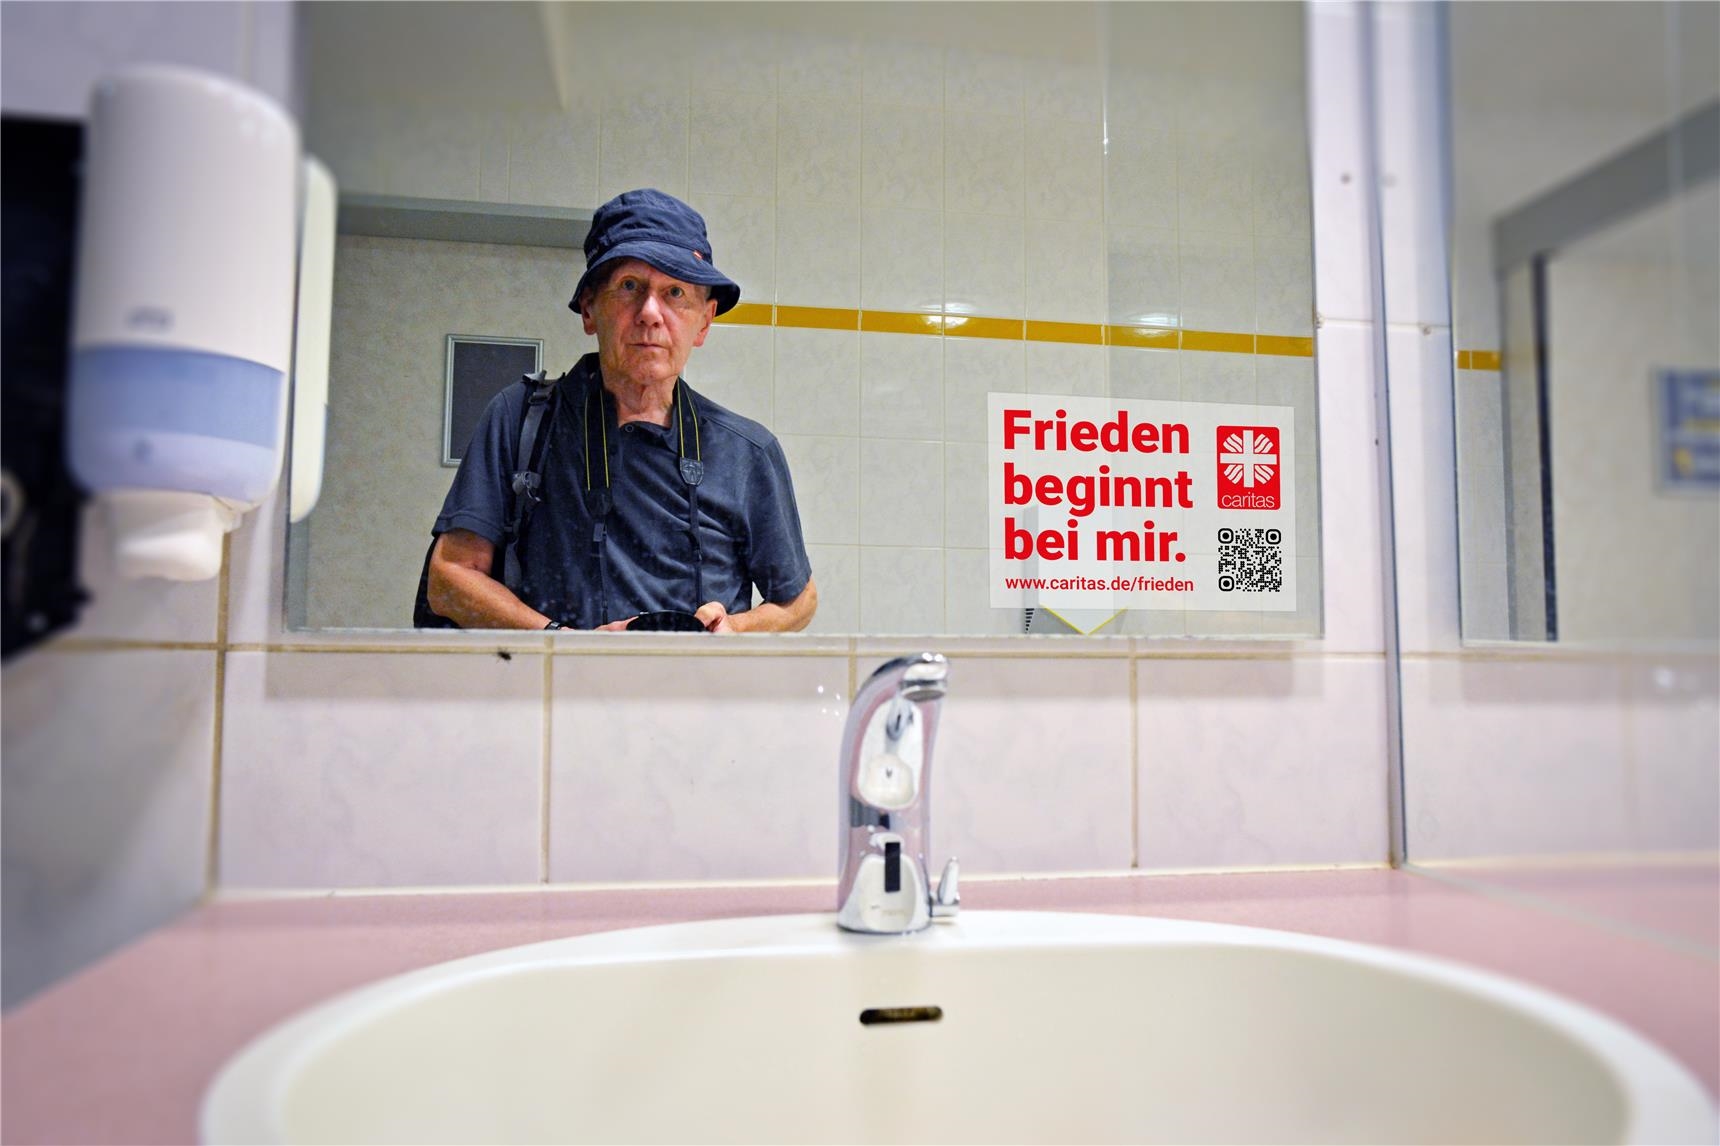 Badezimmerspiegel mit Kampagnenaufkleber der Frieden beginnt bei mir